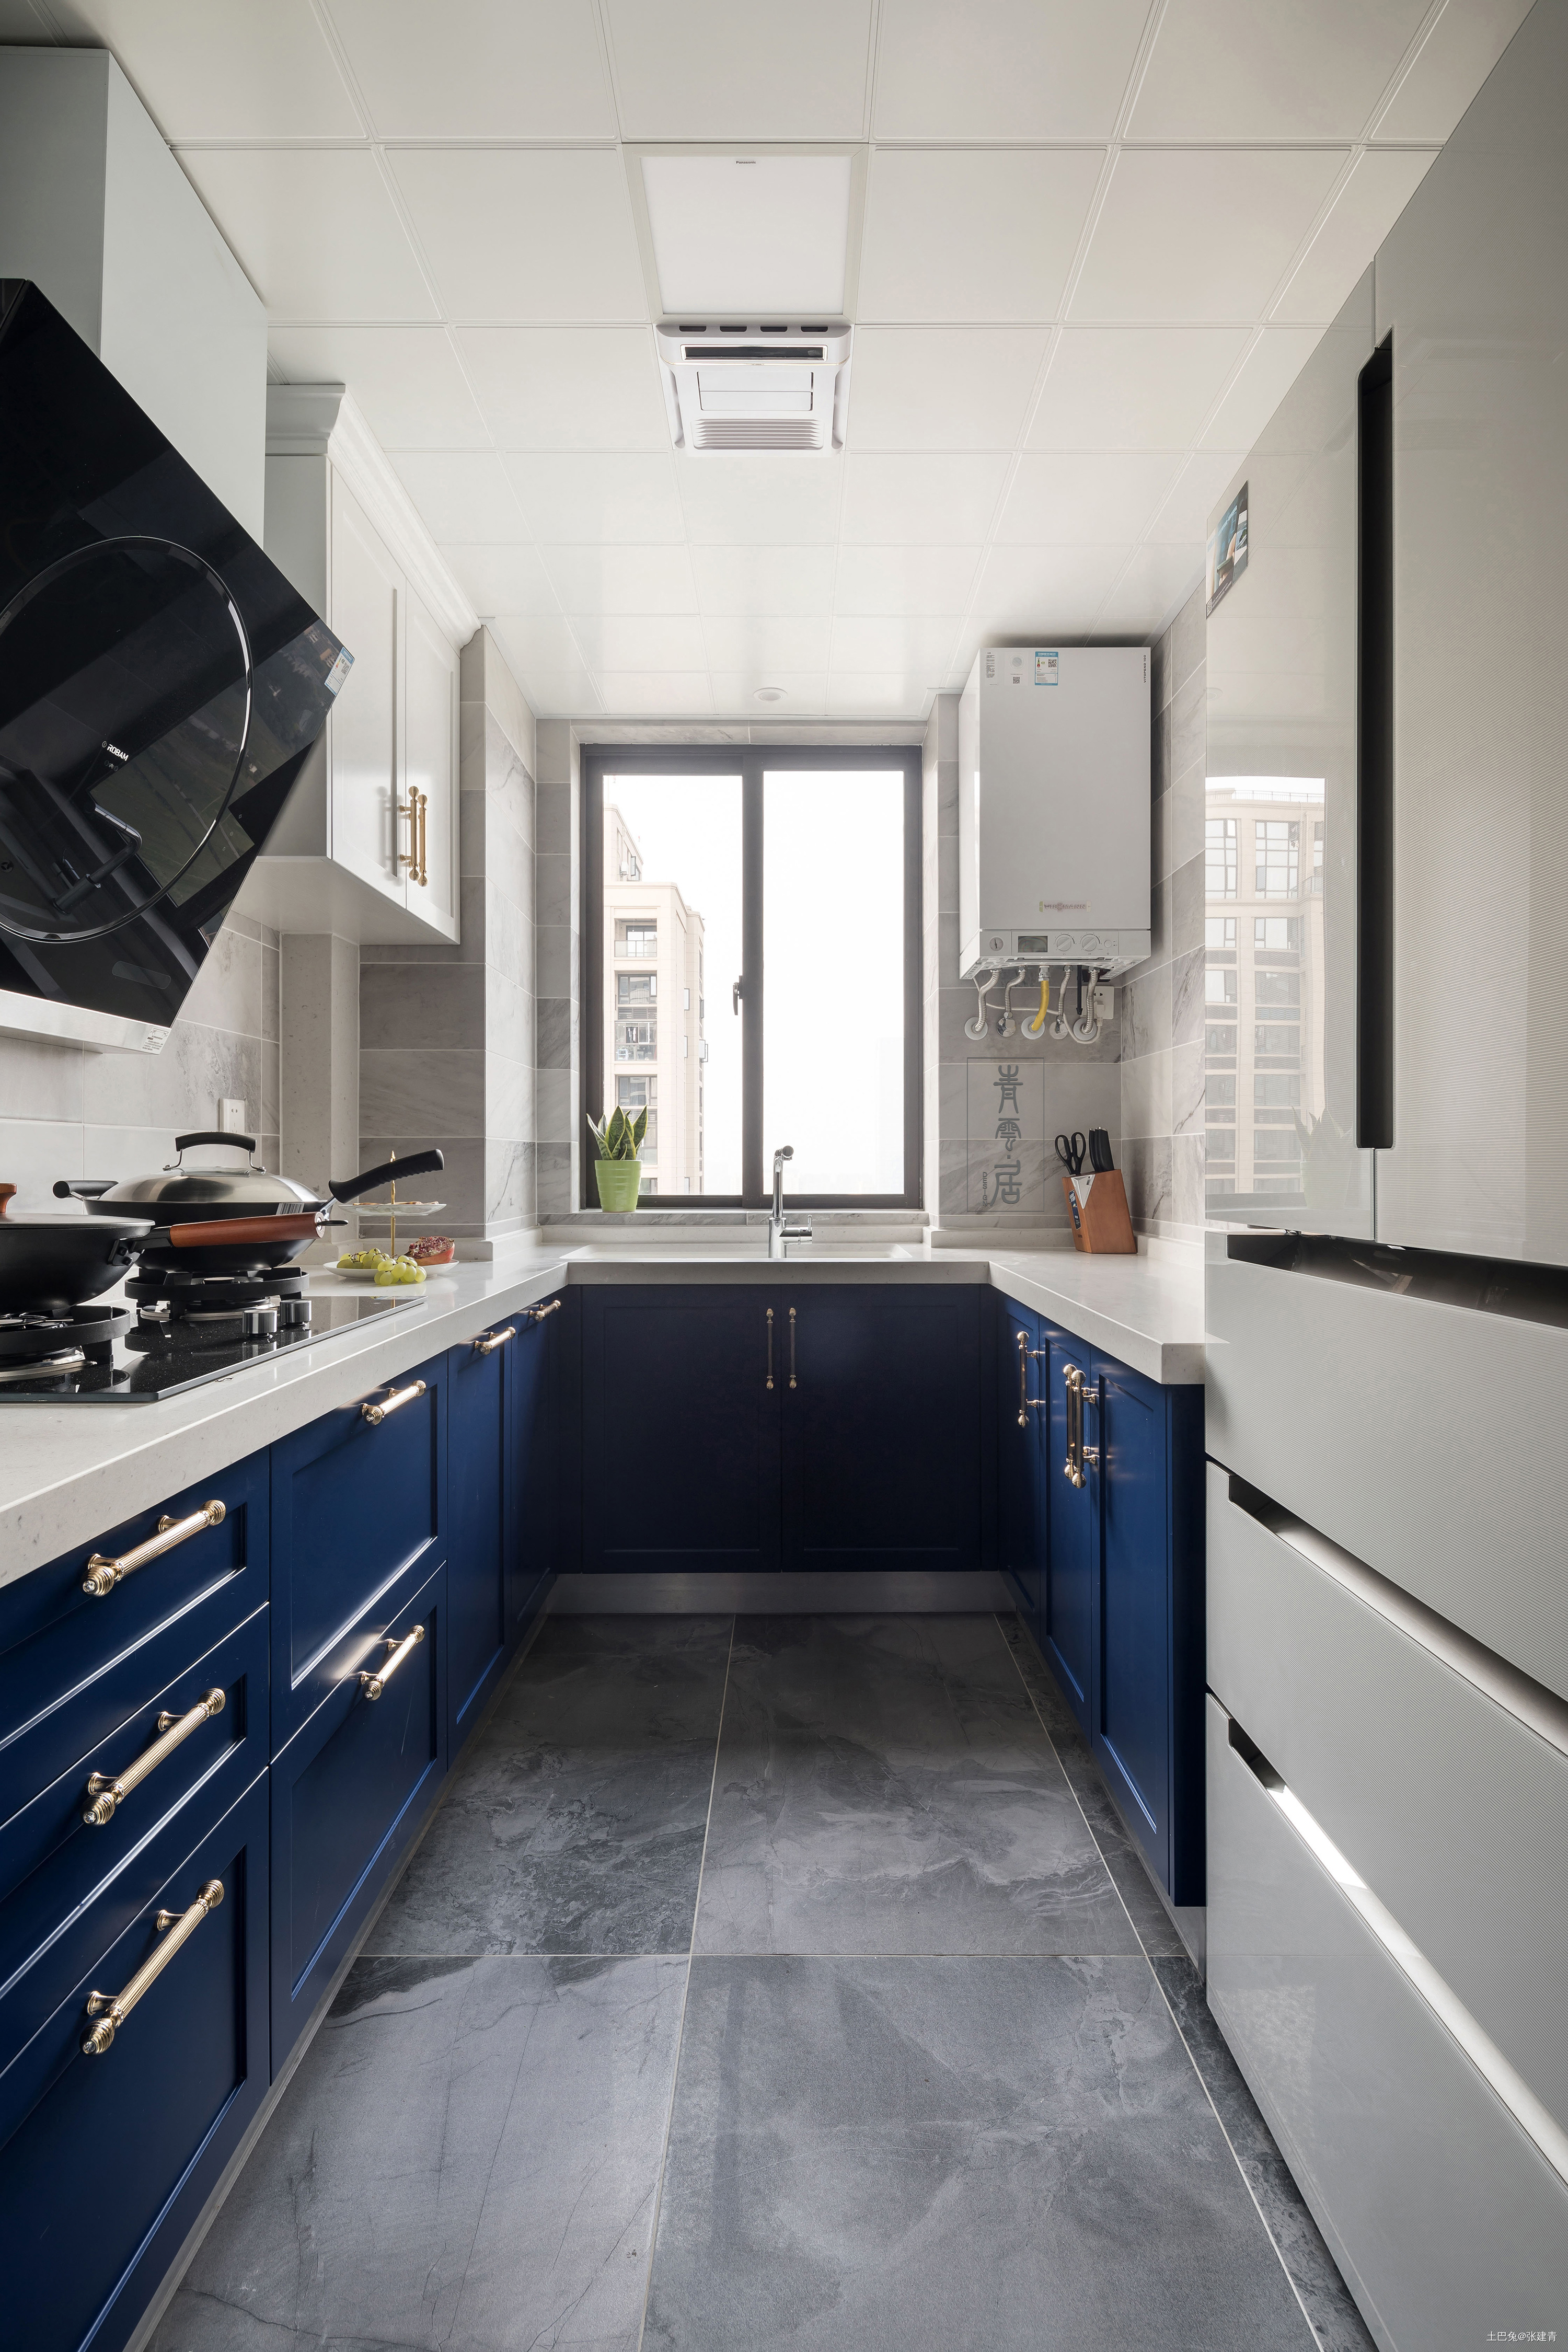 温馨96平美式三居厨房装修设计图美式厨房设计图片赏析